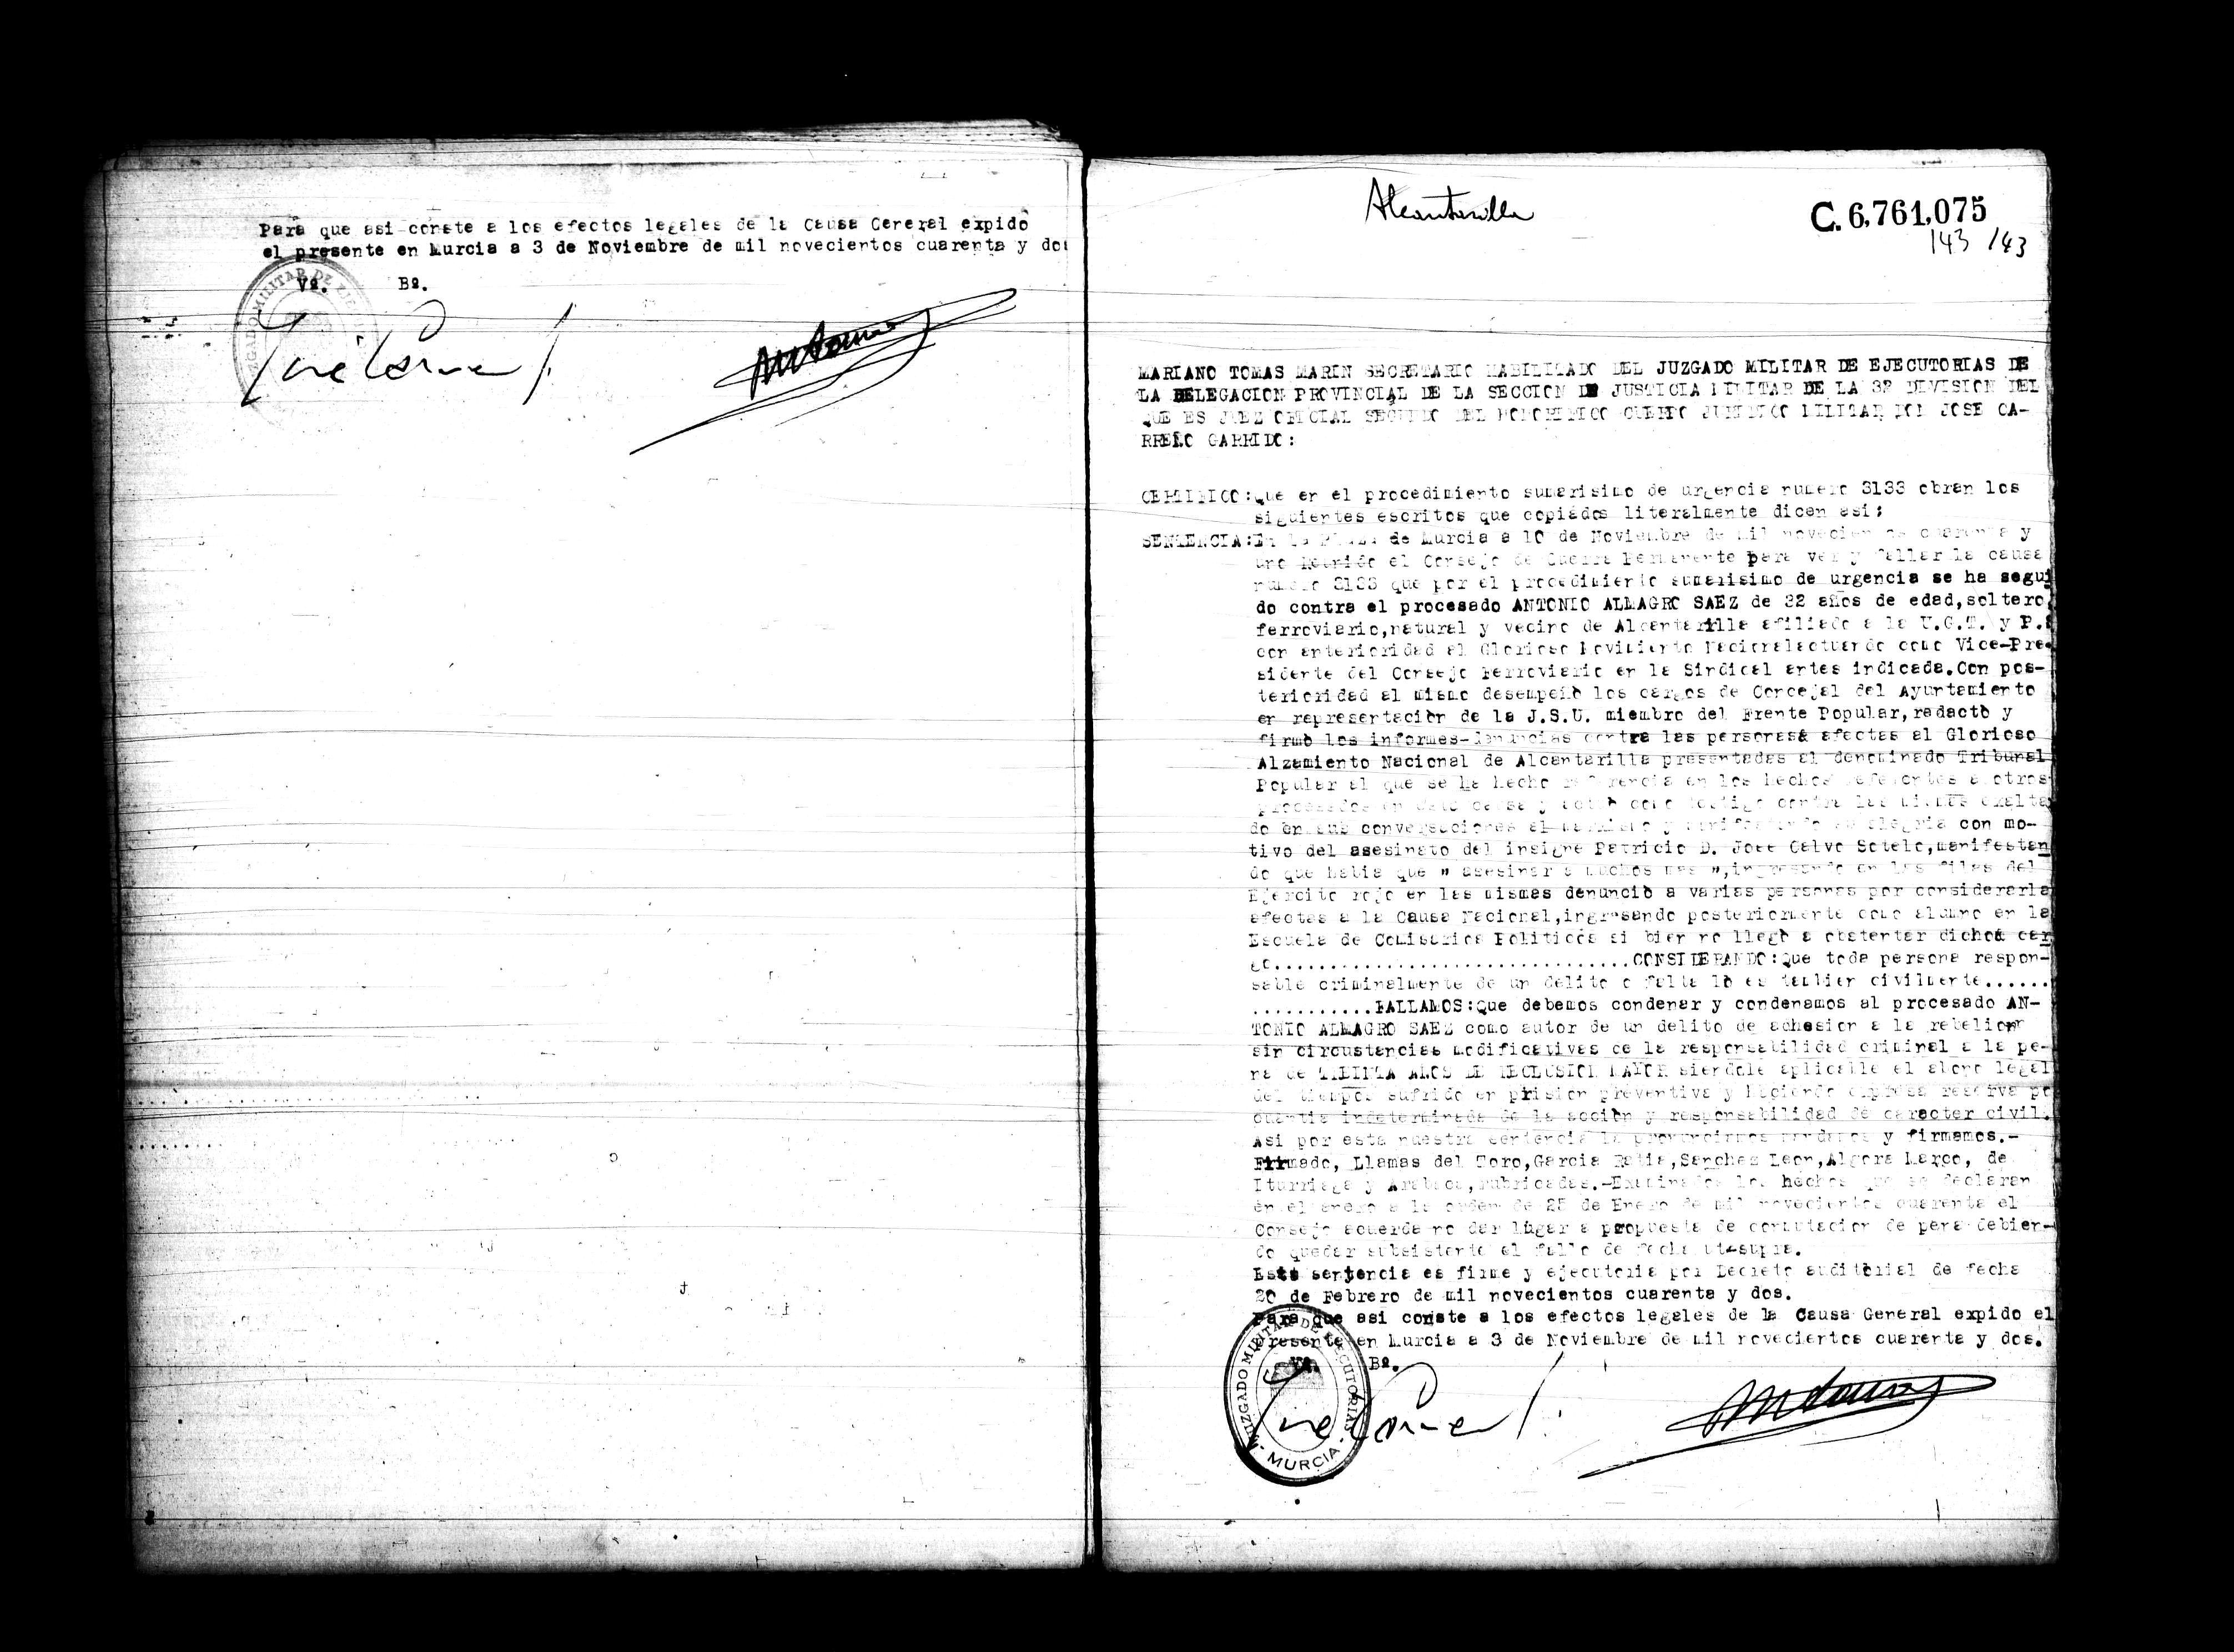 Certificado de la sentencia pronunciada contra Antonio Almagro Sáez, causa 3133, el 10 de noviembre de 1941 en Murcia.